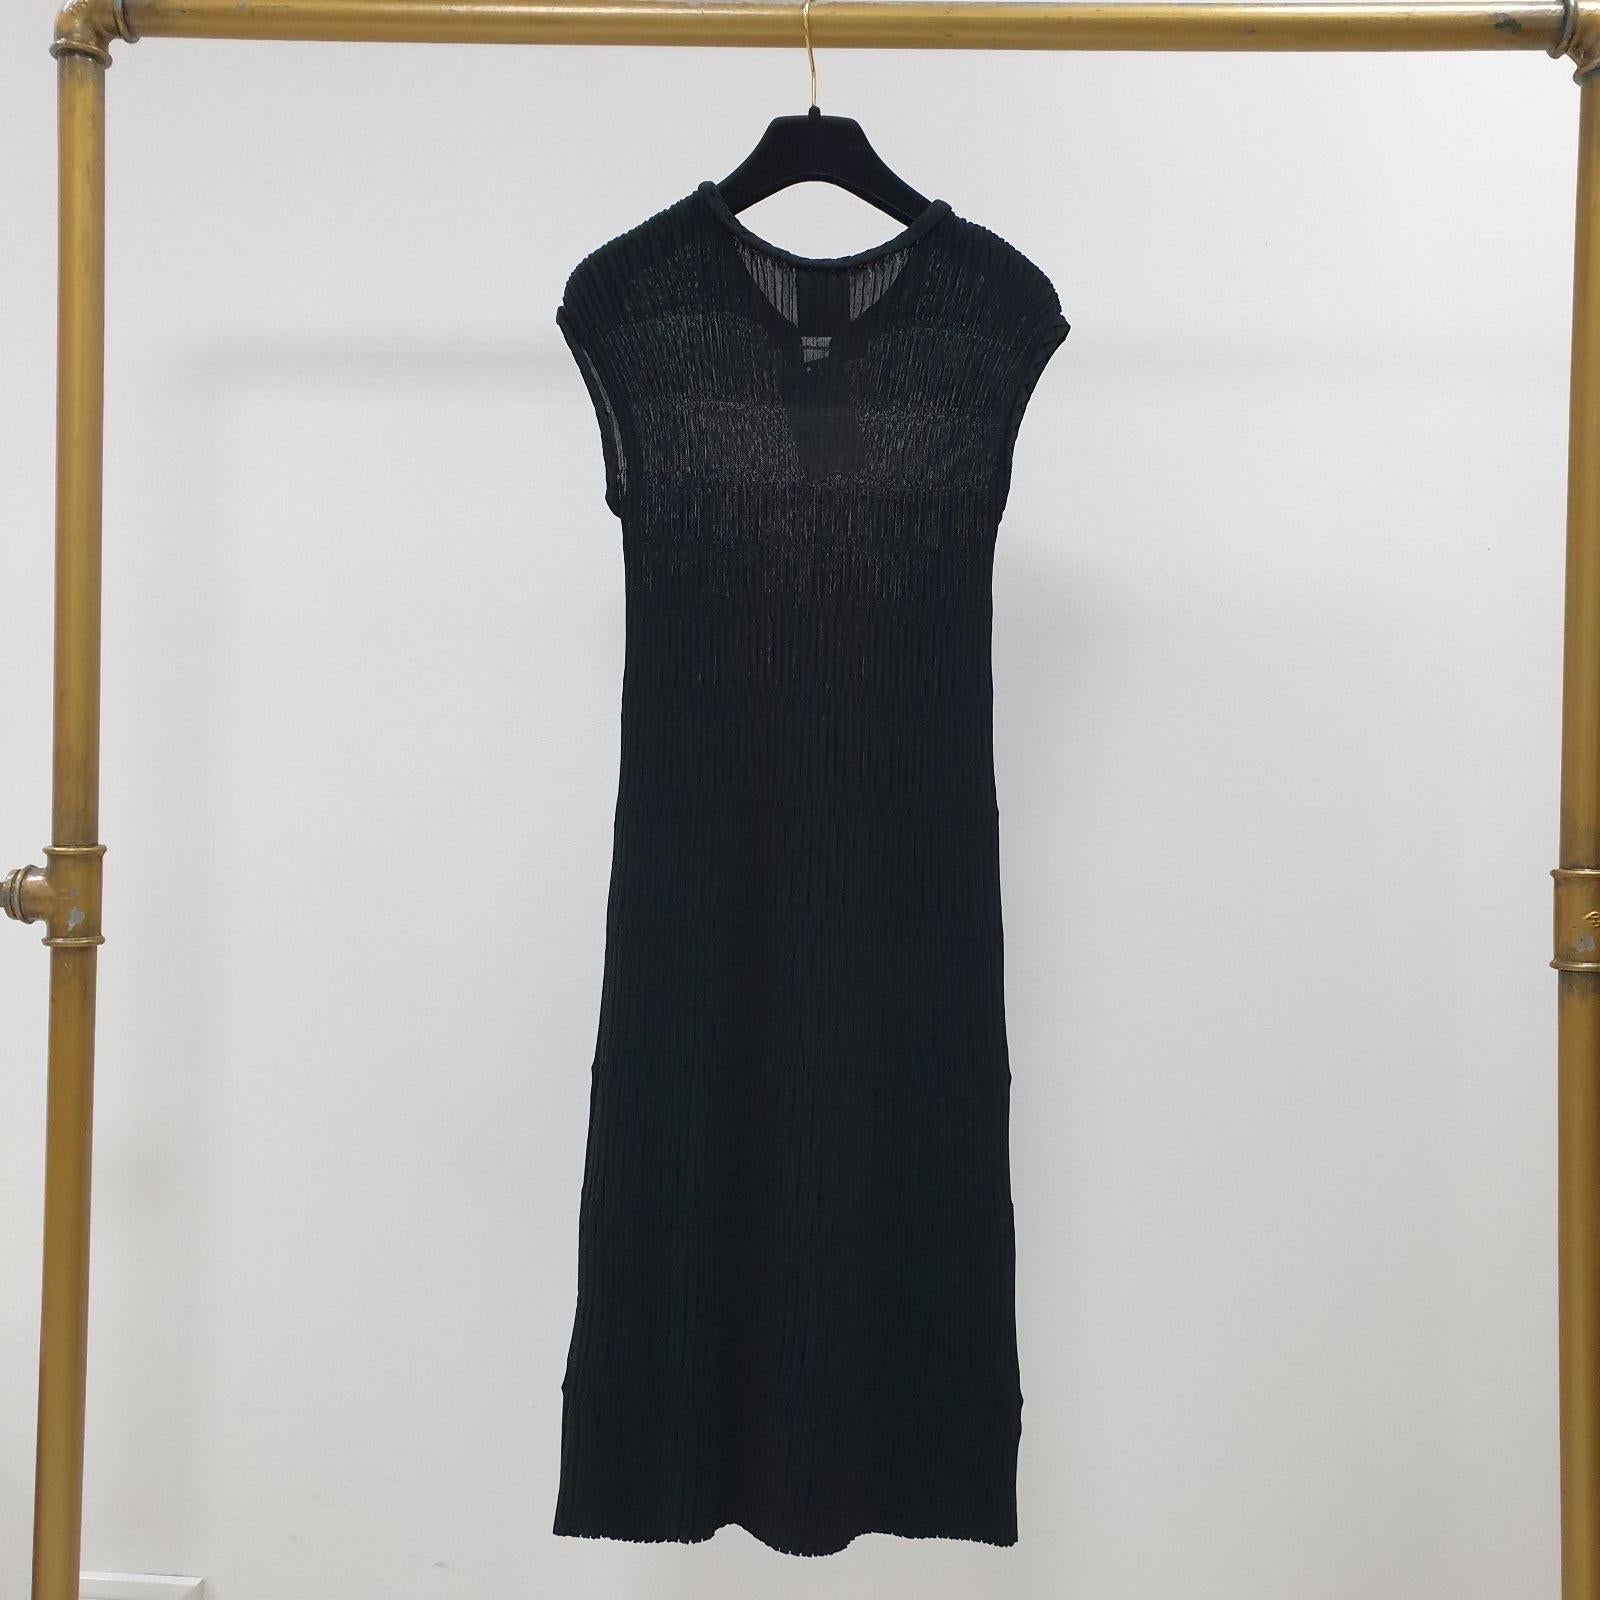 Authentic Chanel minimalistisch göttlich in einem schwarzen Strick, ist dieses Kleid eine luxuriöse, aber praktische Investition, die Sie Saison für Saison tragen können.

Schöne Chanel 2 Knöpfe vorne um den Halsausschnitt.

Sz.34
Ausgezeichneter